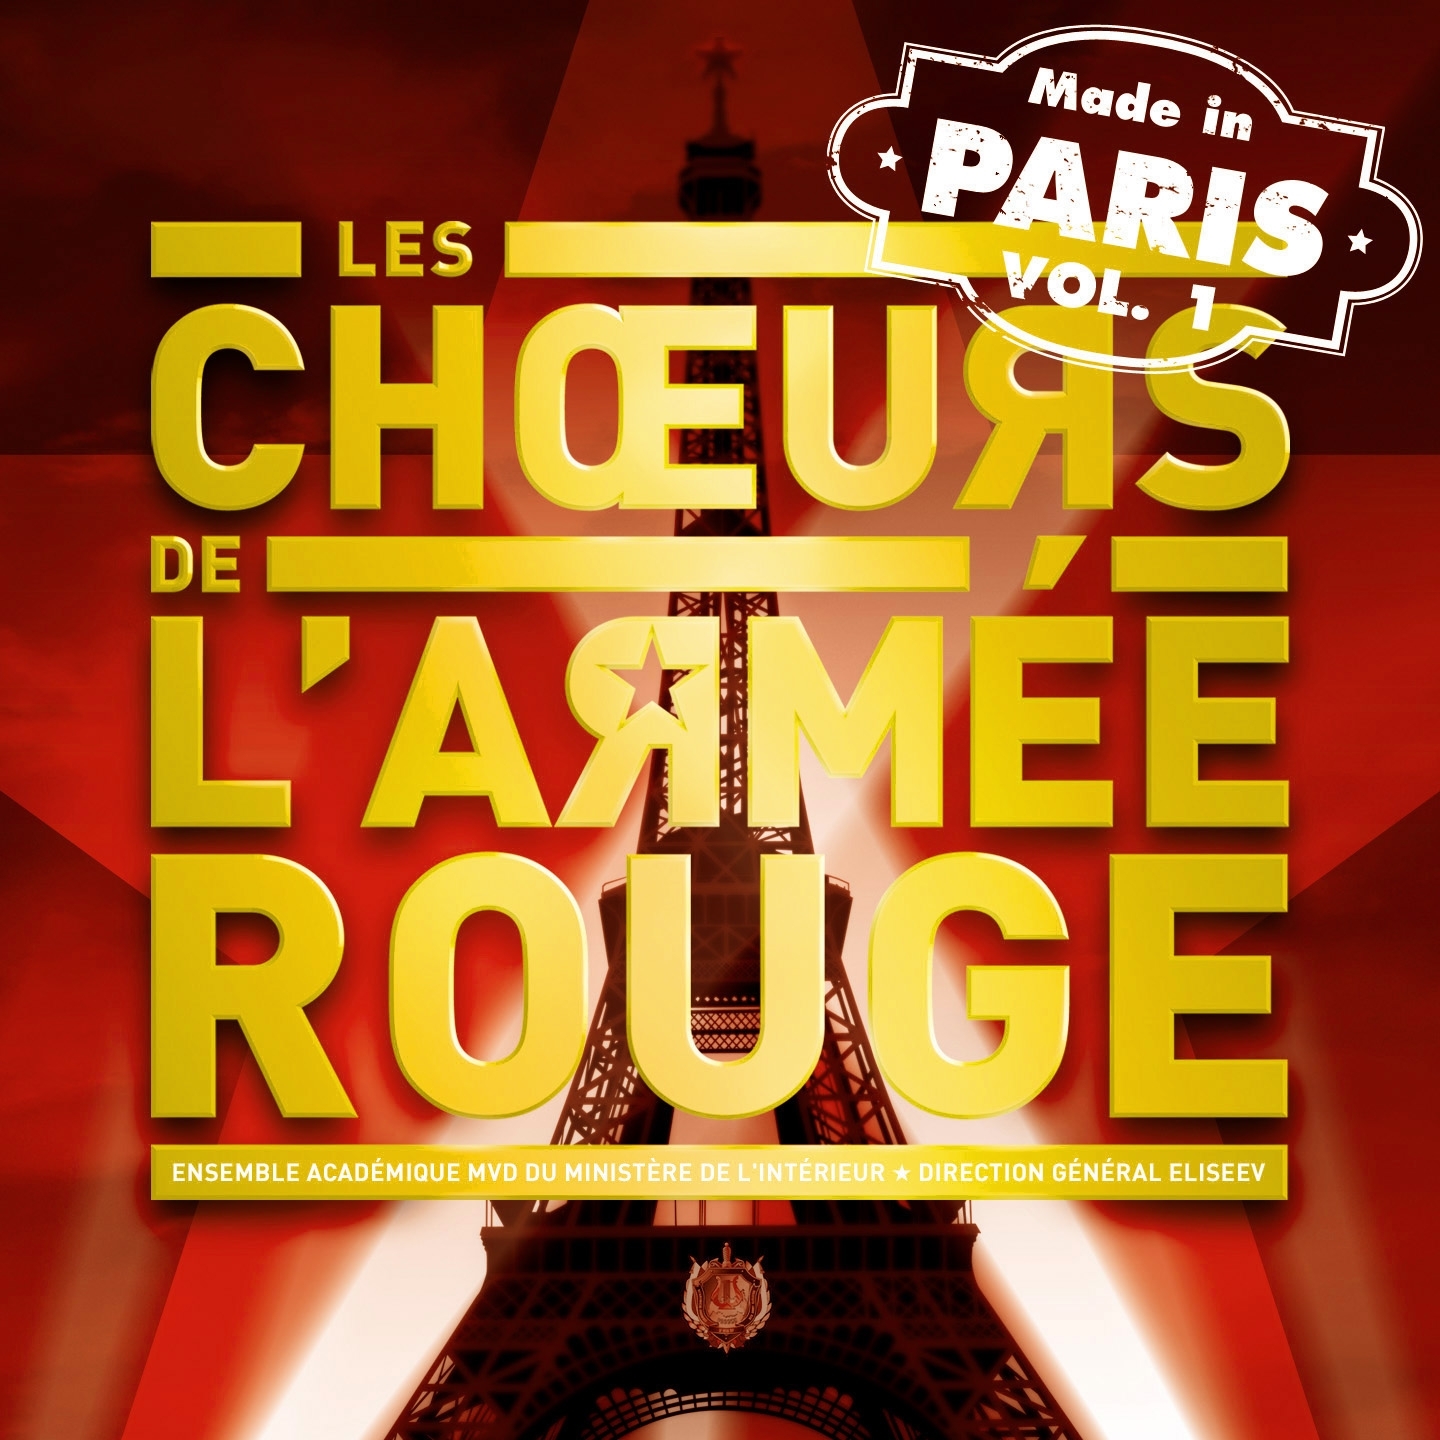 Choeurs de l' Arme e Rouge Made in Paris, Vol. 1